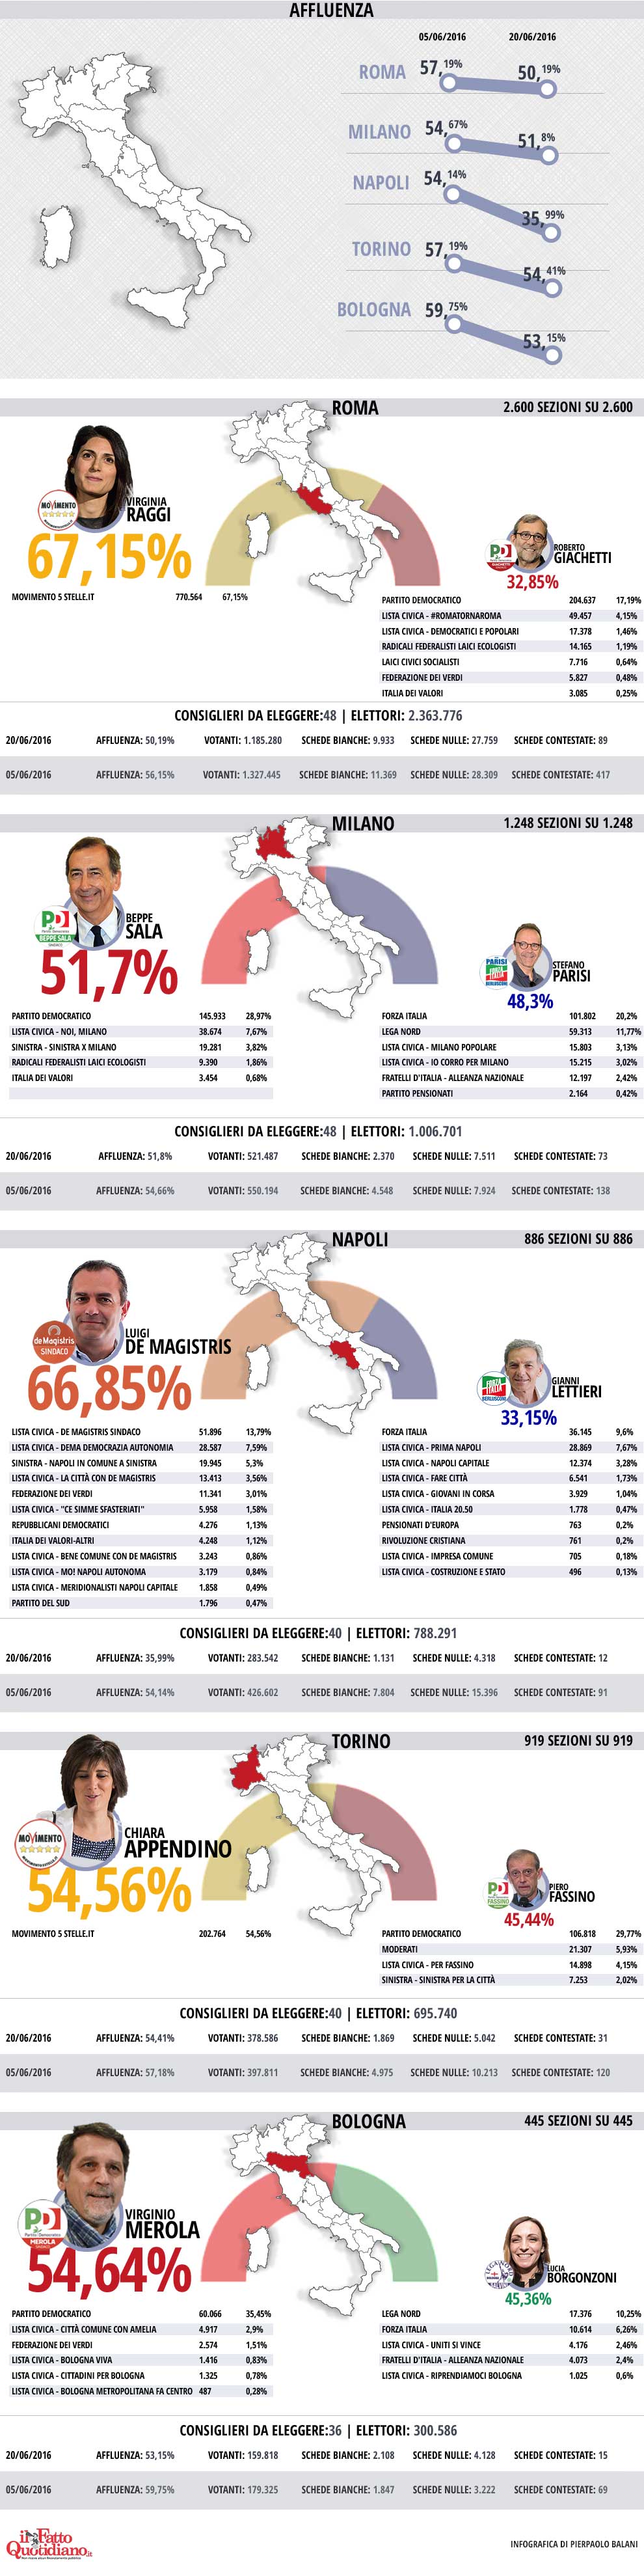 elezioni--infografica-2016-06-20